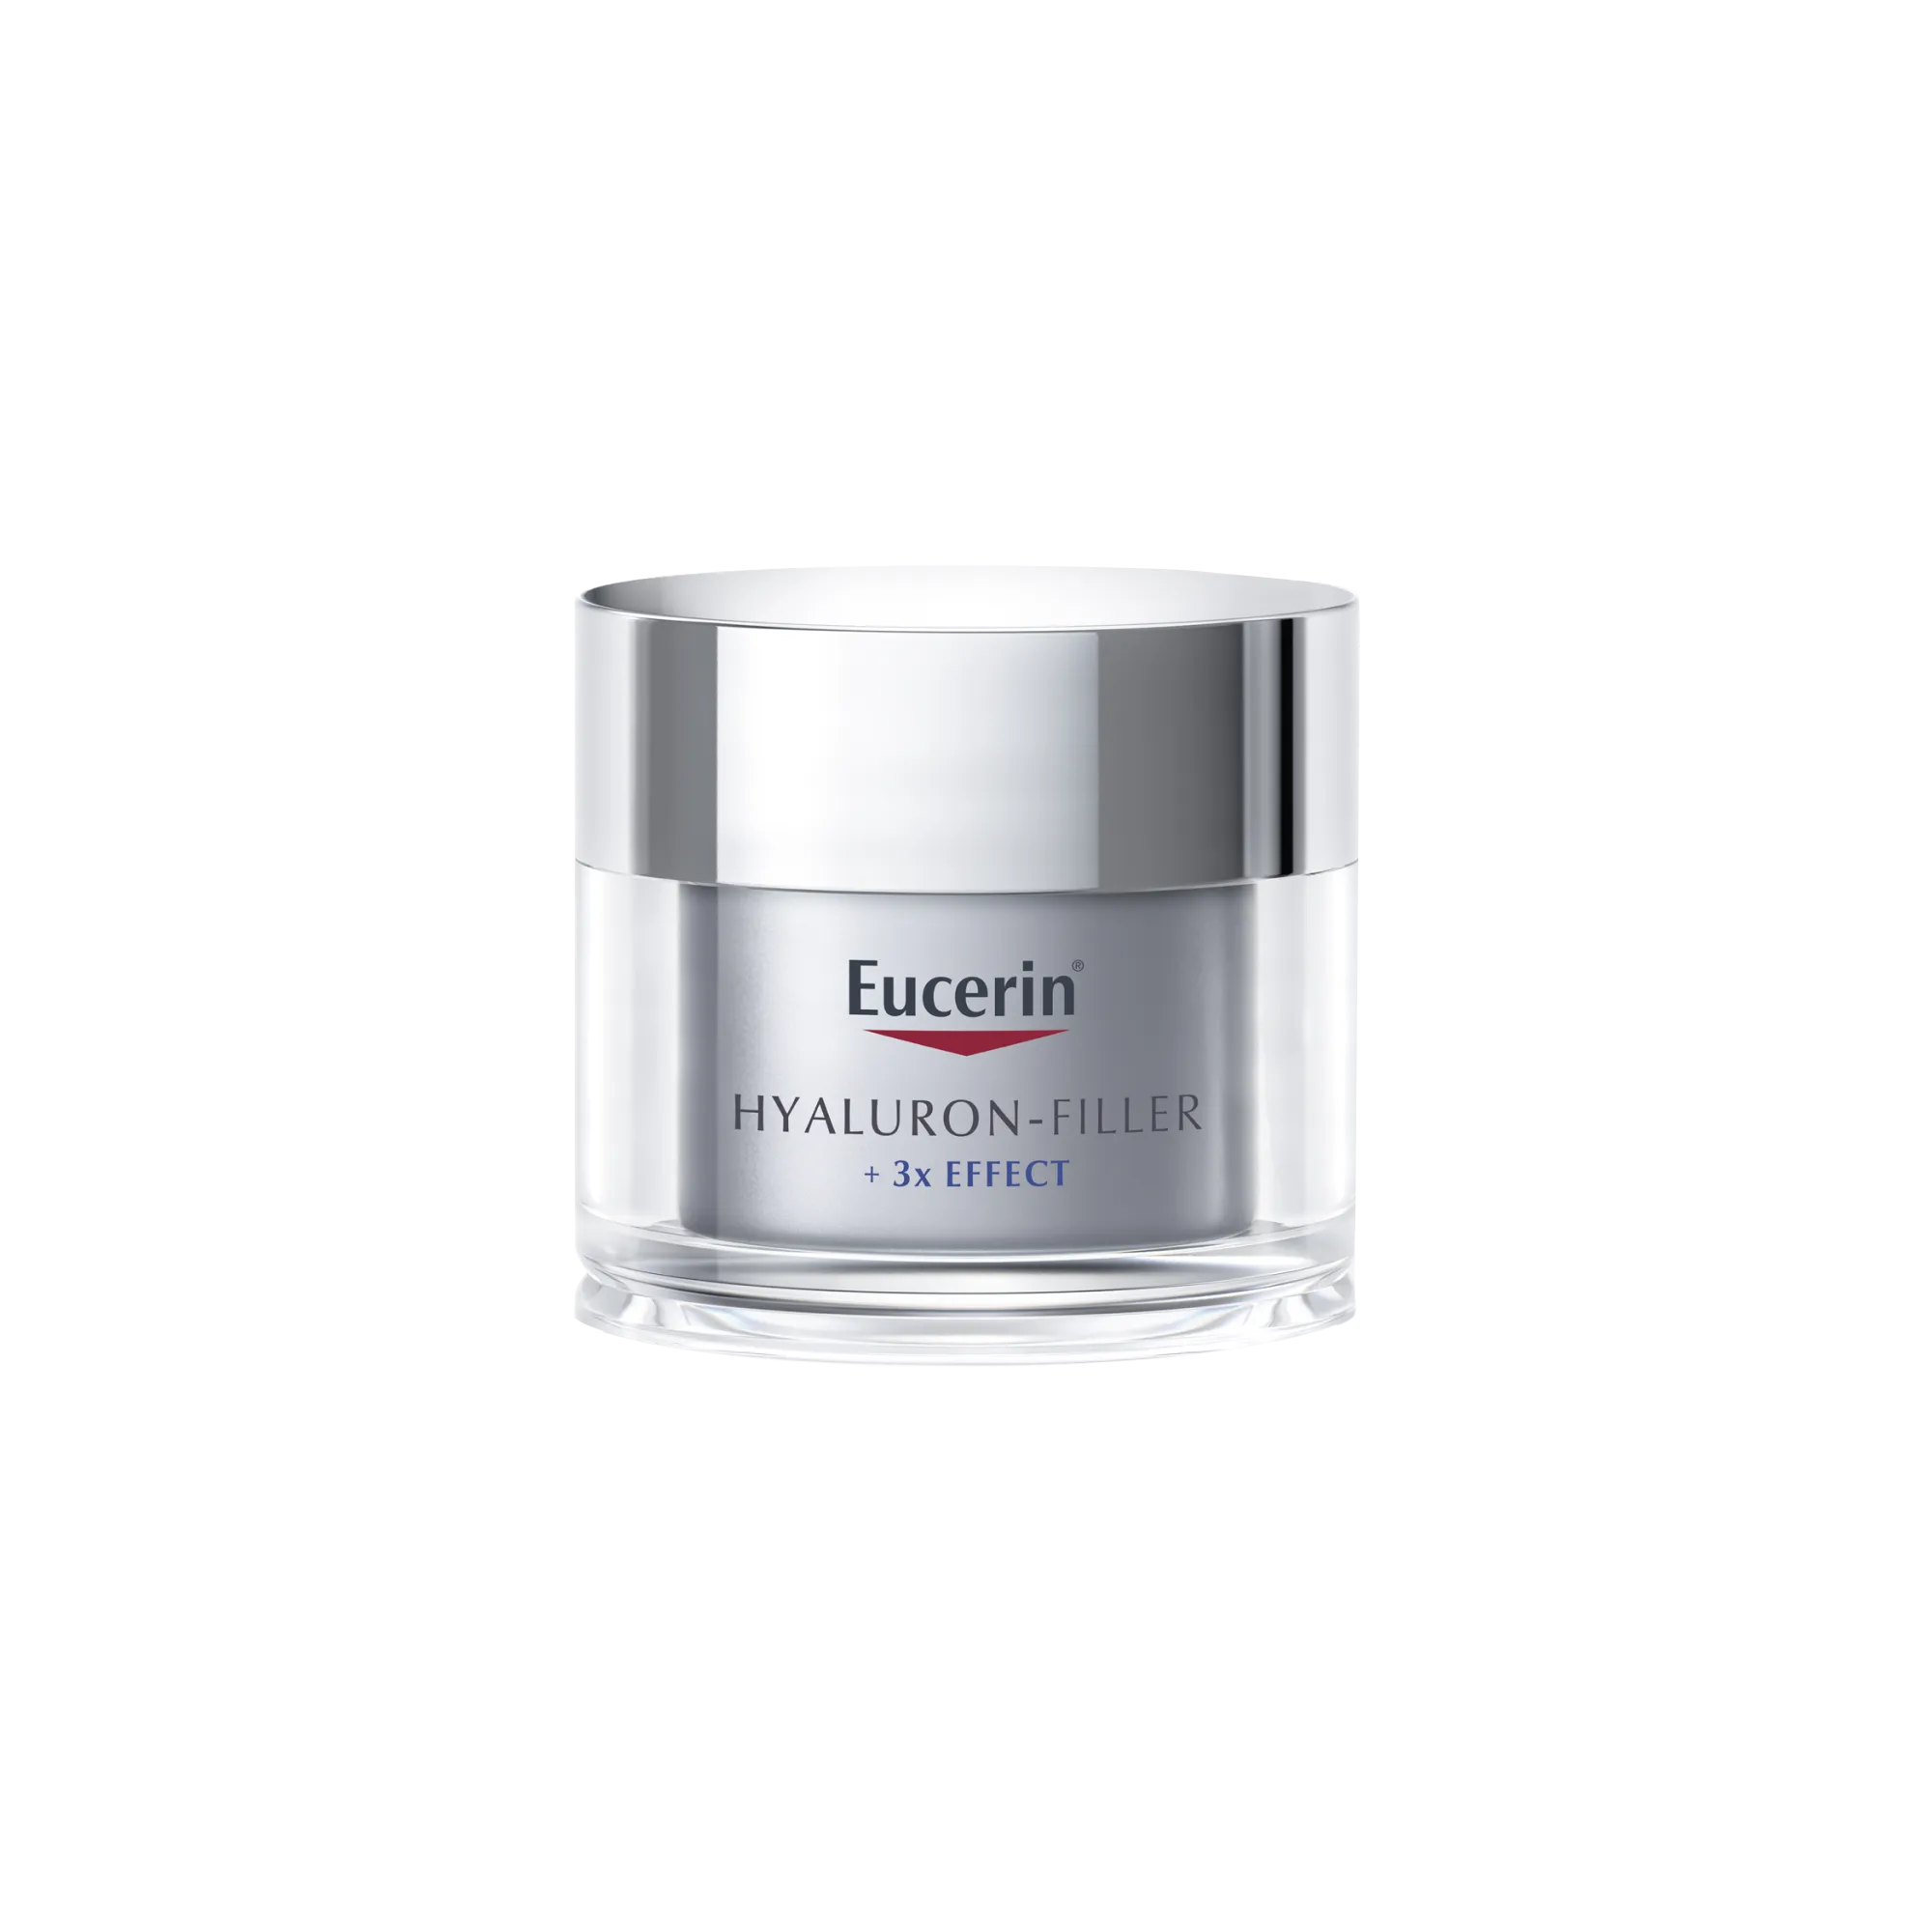 Eucerin Hyaluron-Filler przeciwzmarszczkowy krem na noc do każdego typu skóry, 50 ml